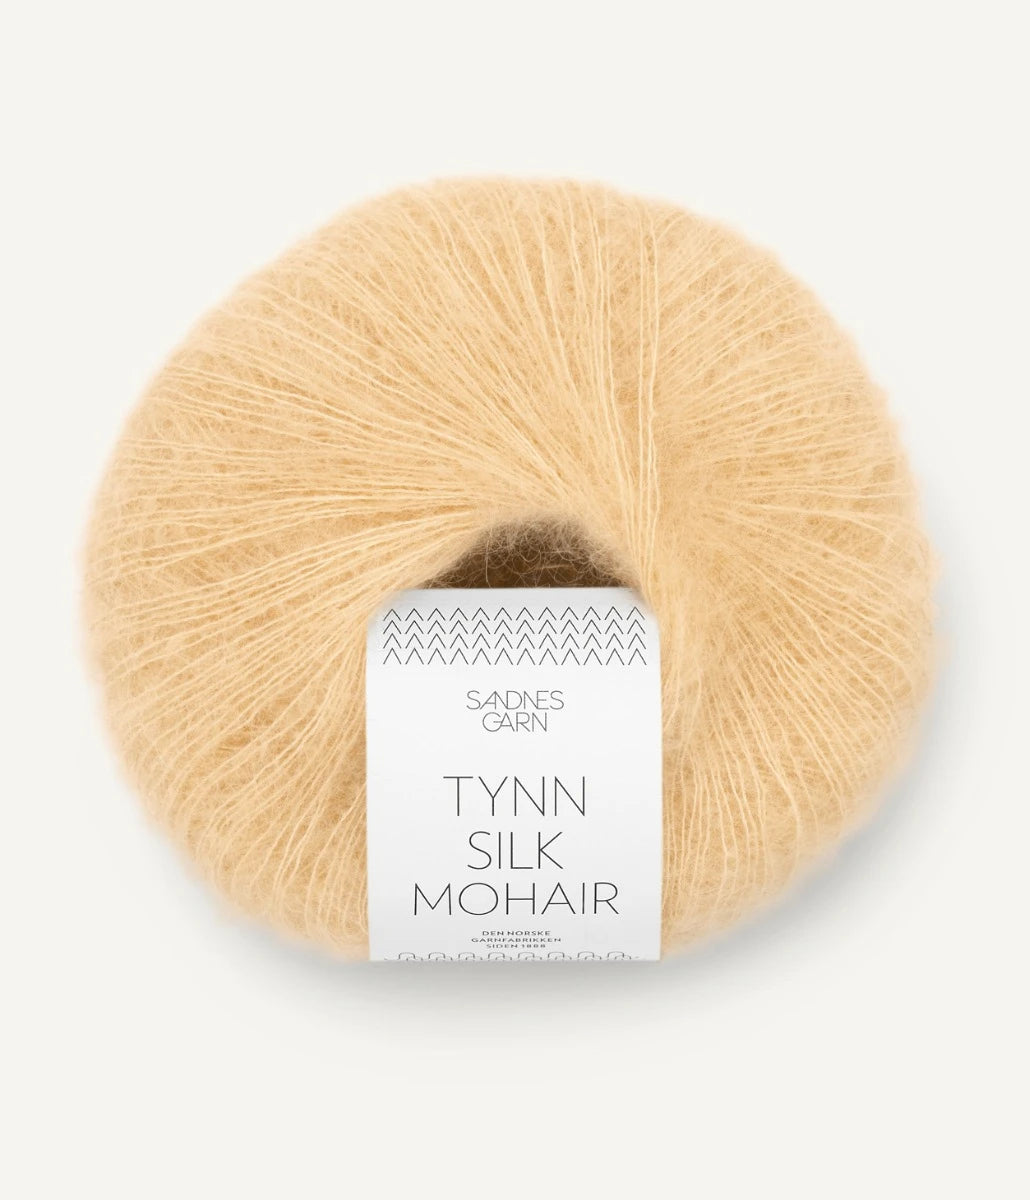 Kuvassa on Sandnes Garn Tynn Silk Mohair -lanka (yarn) värissä Gul Månestein.